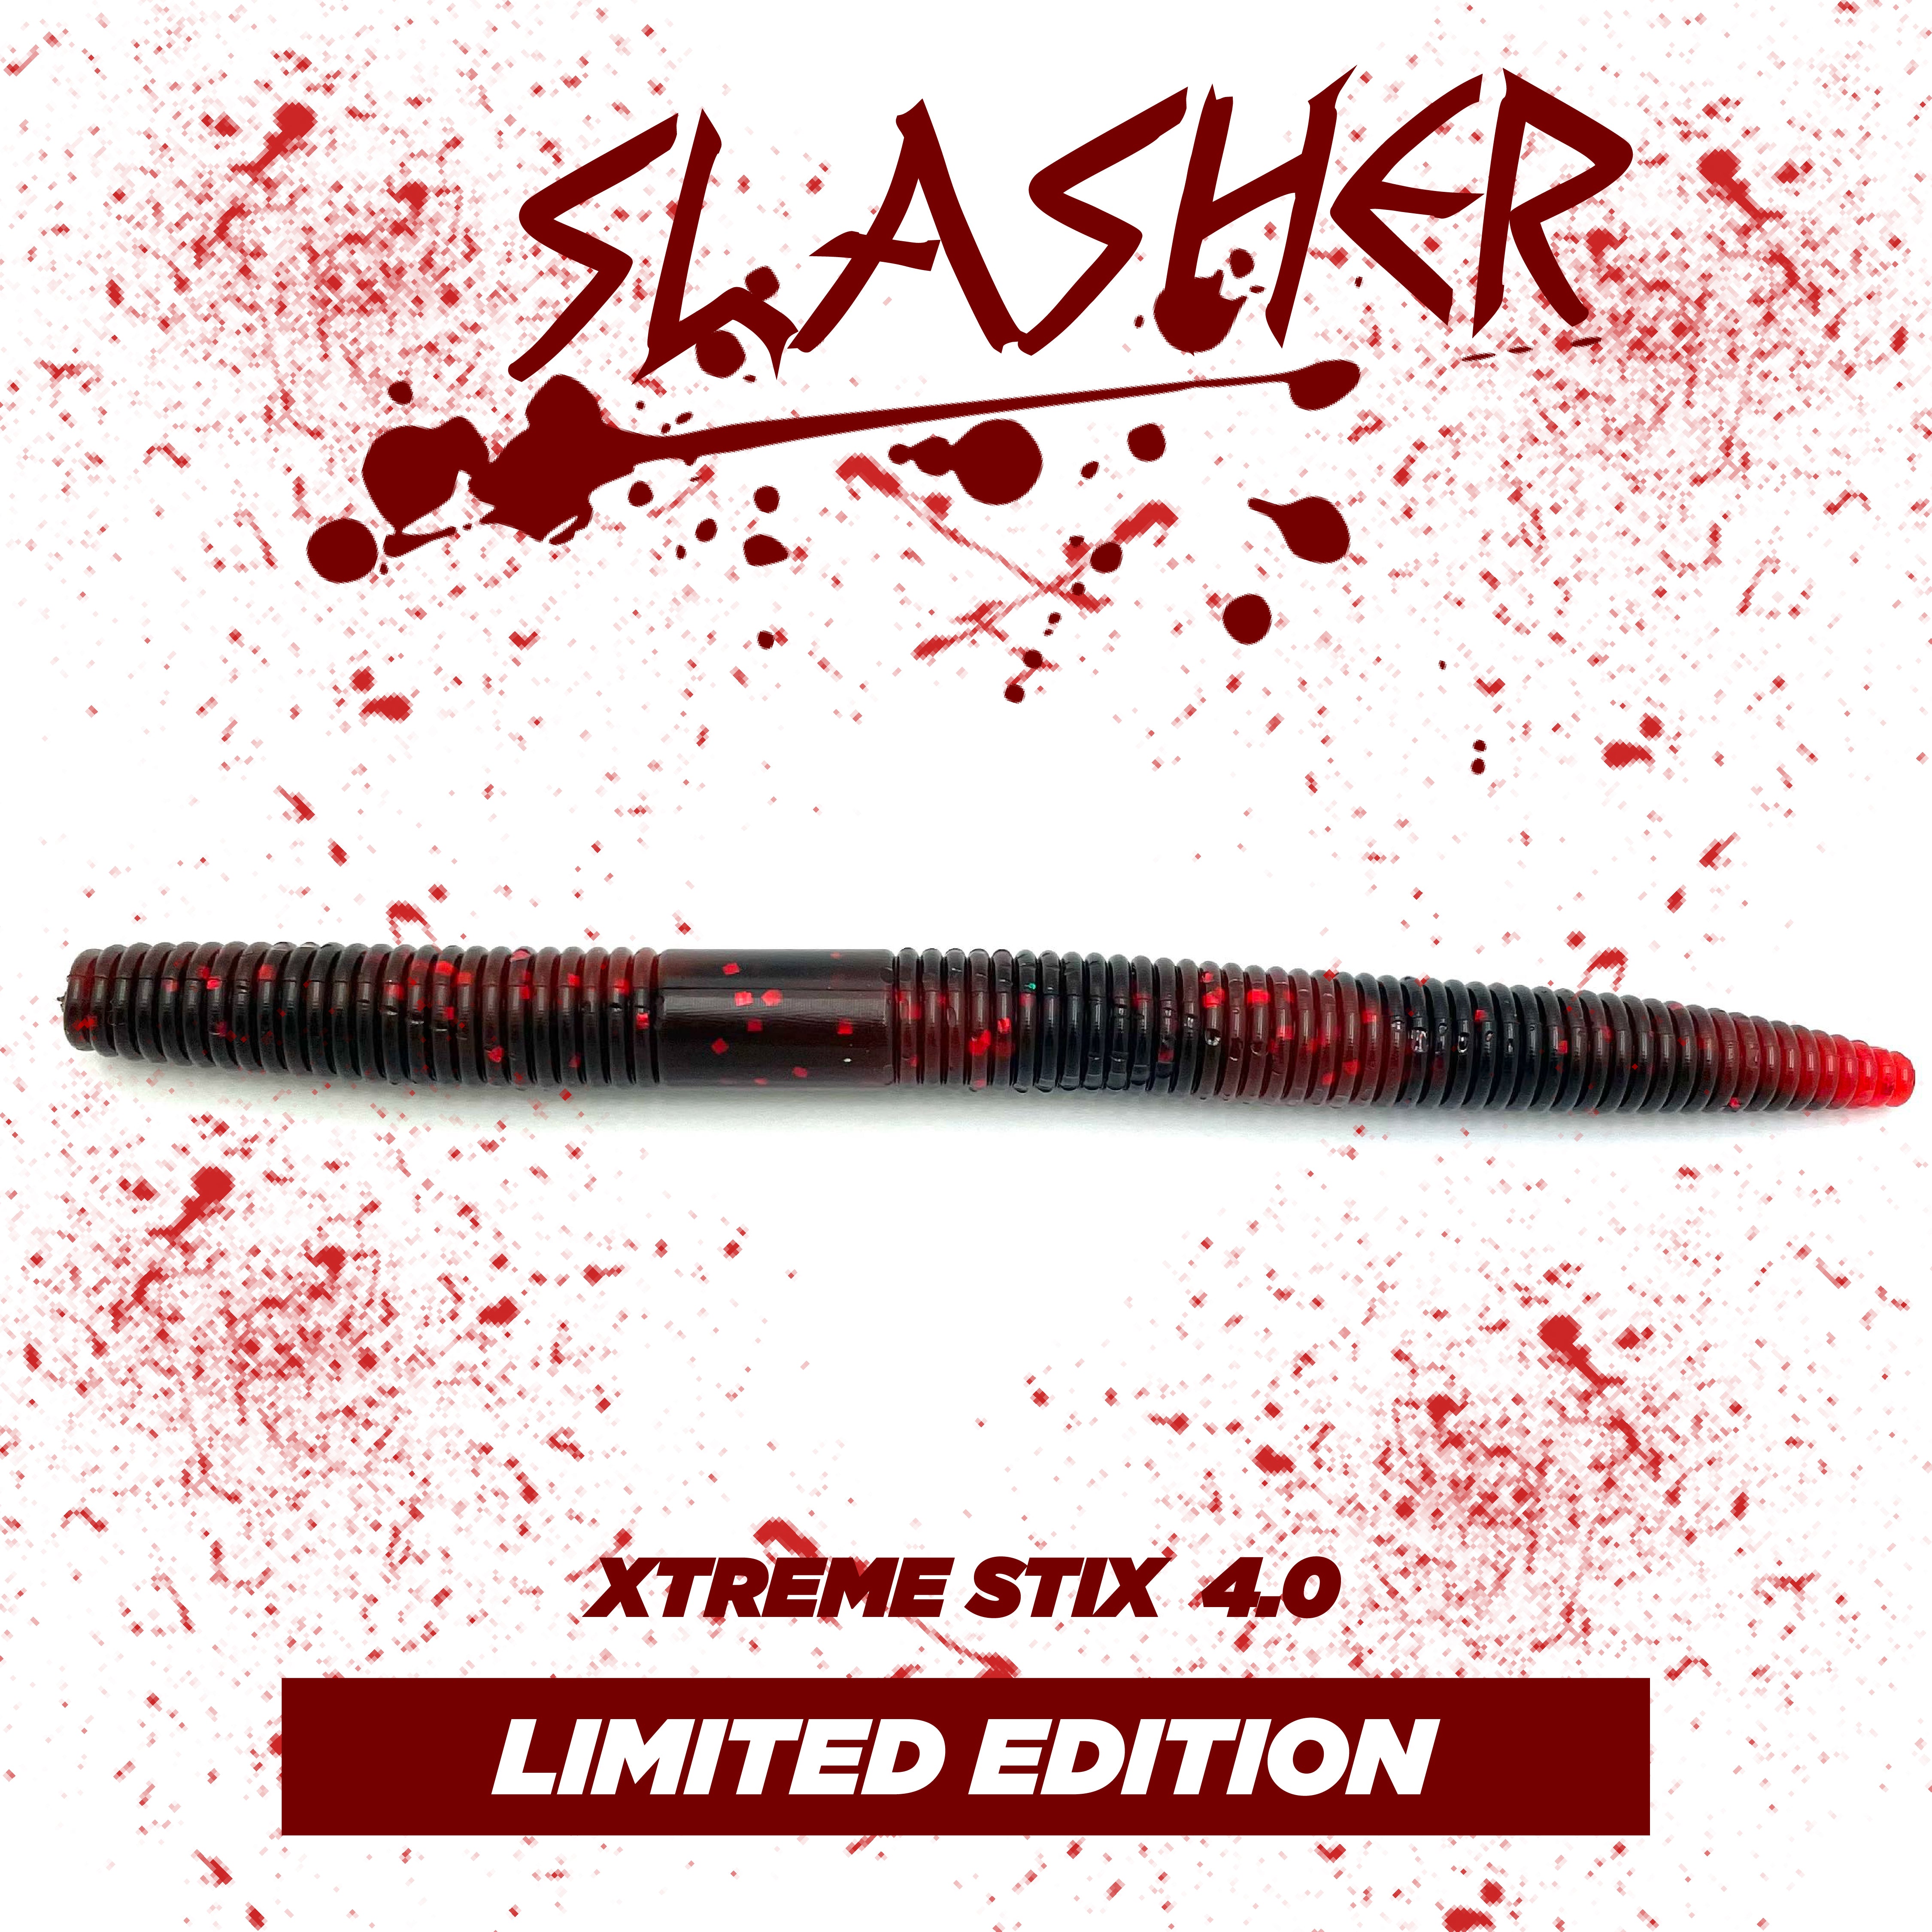 Xtreme Stix 4.0 - Slasher